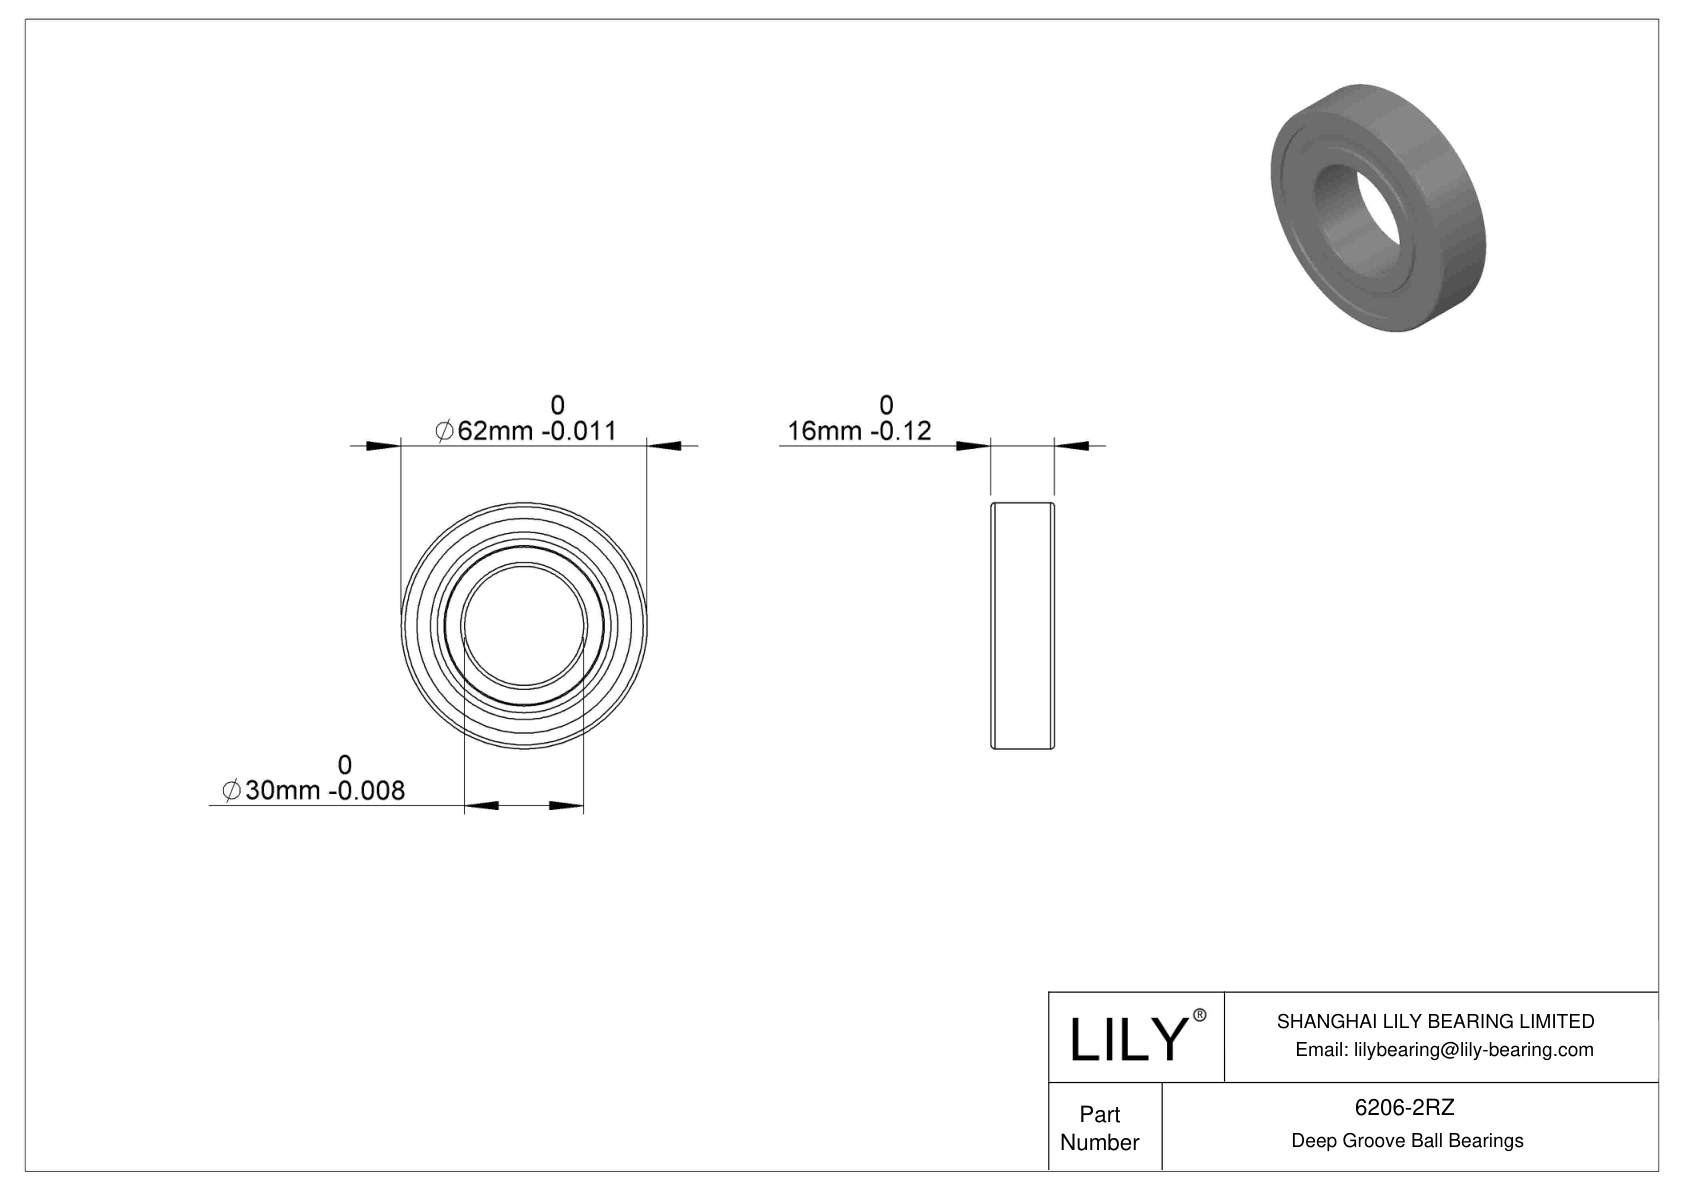 6206-2RZ 单列深沟球轴承 CAD图形